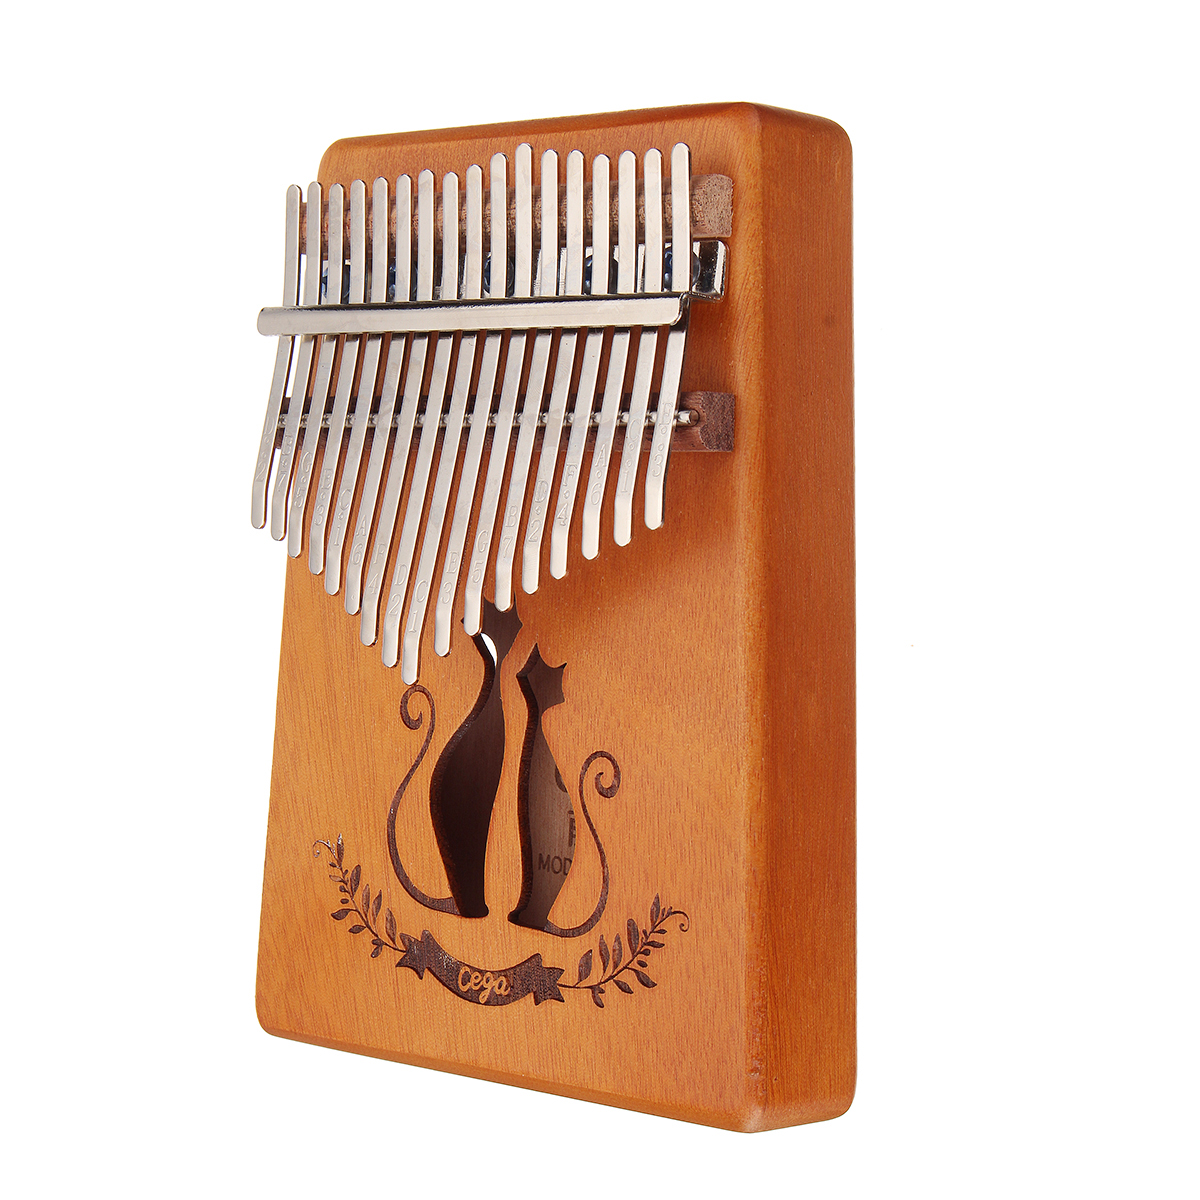 17-Key-Mahogany-Kalimba-Veneer-Mini-Thumb-Piano-Keyboard-Carved-Tone-Instrument-1452036